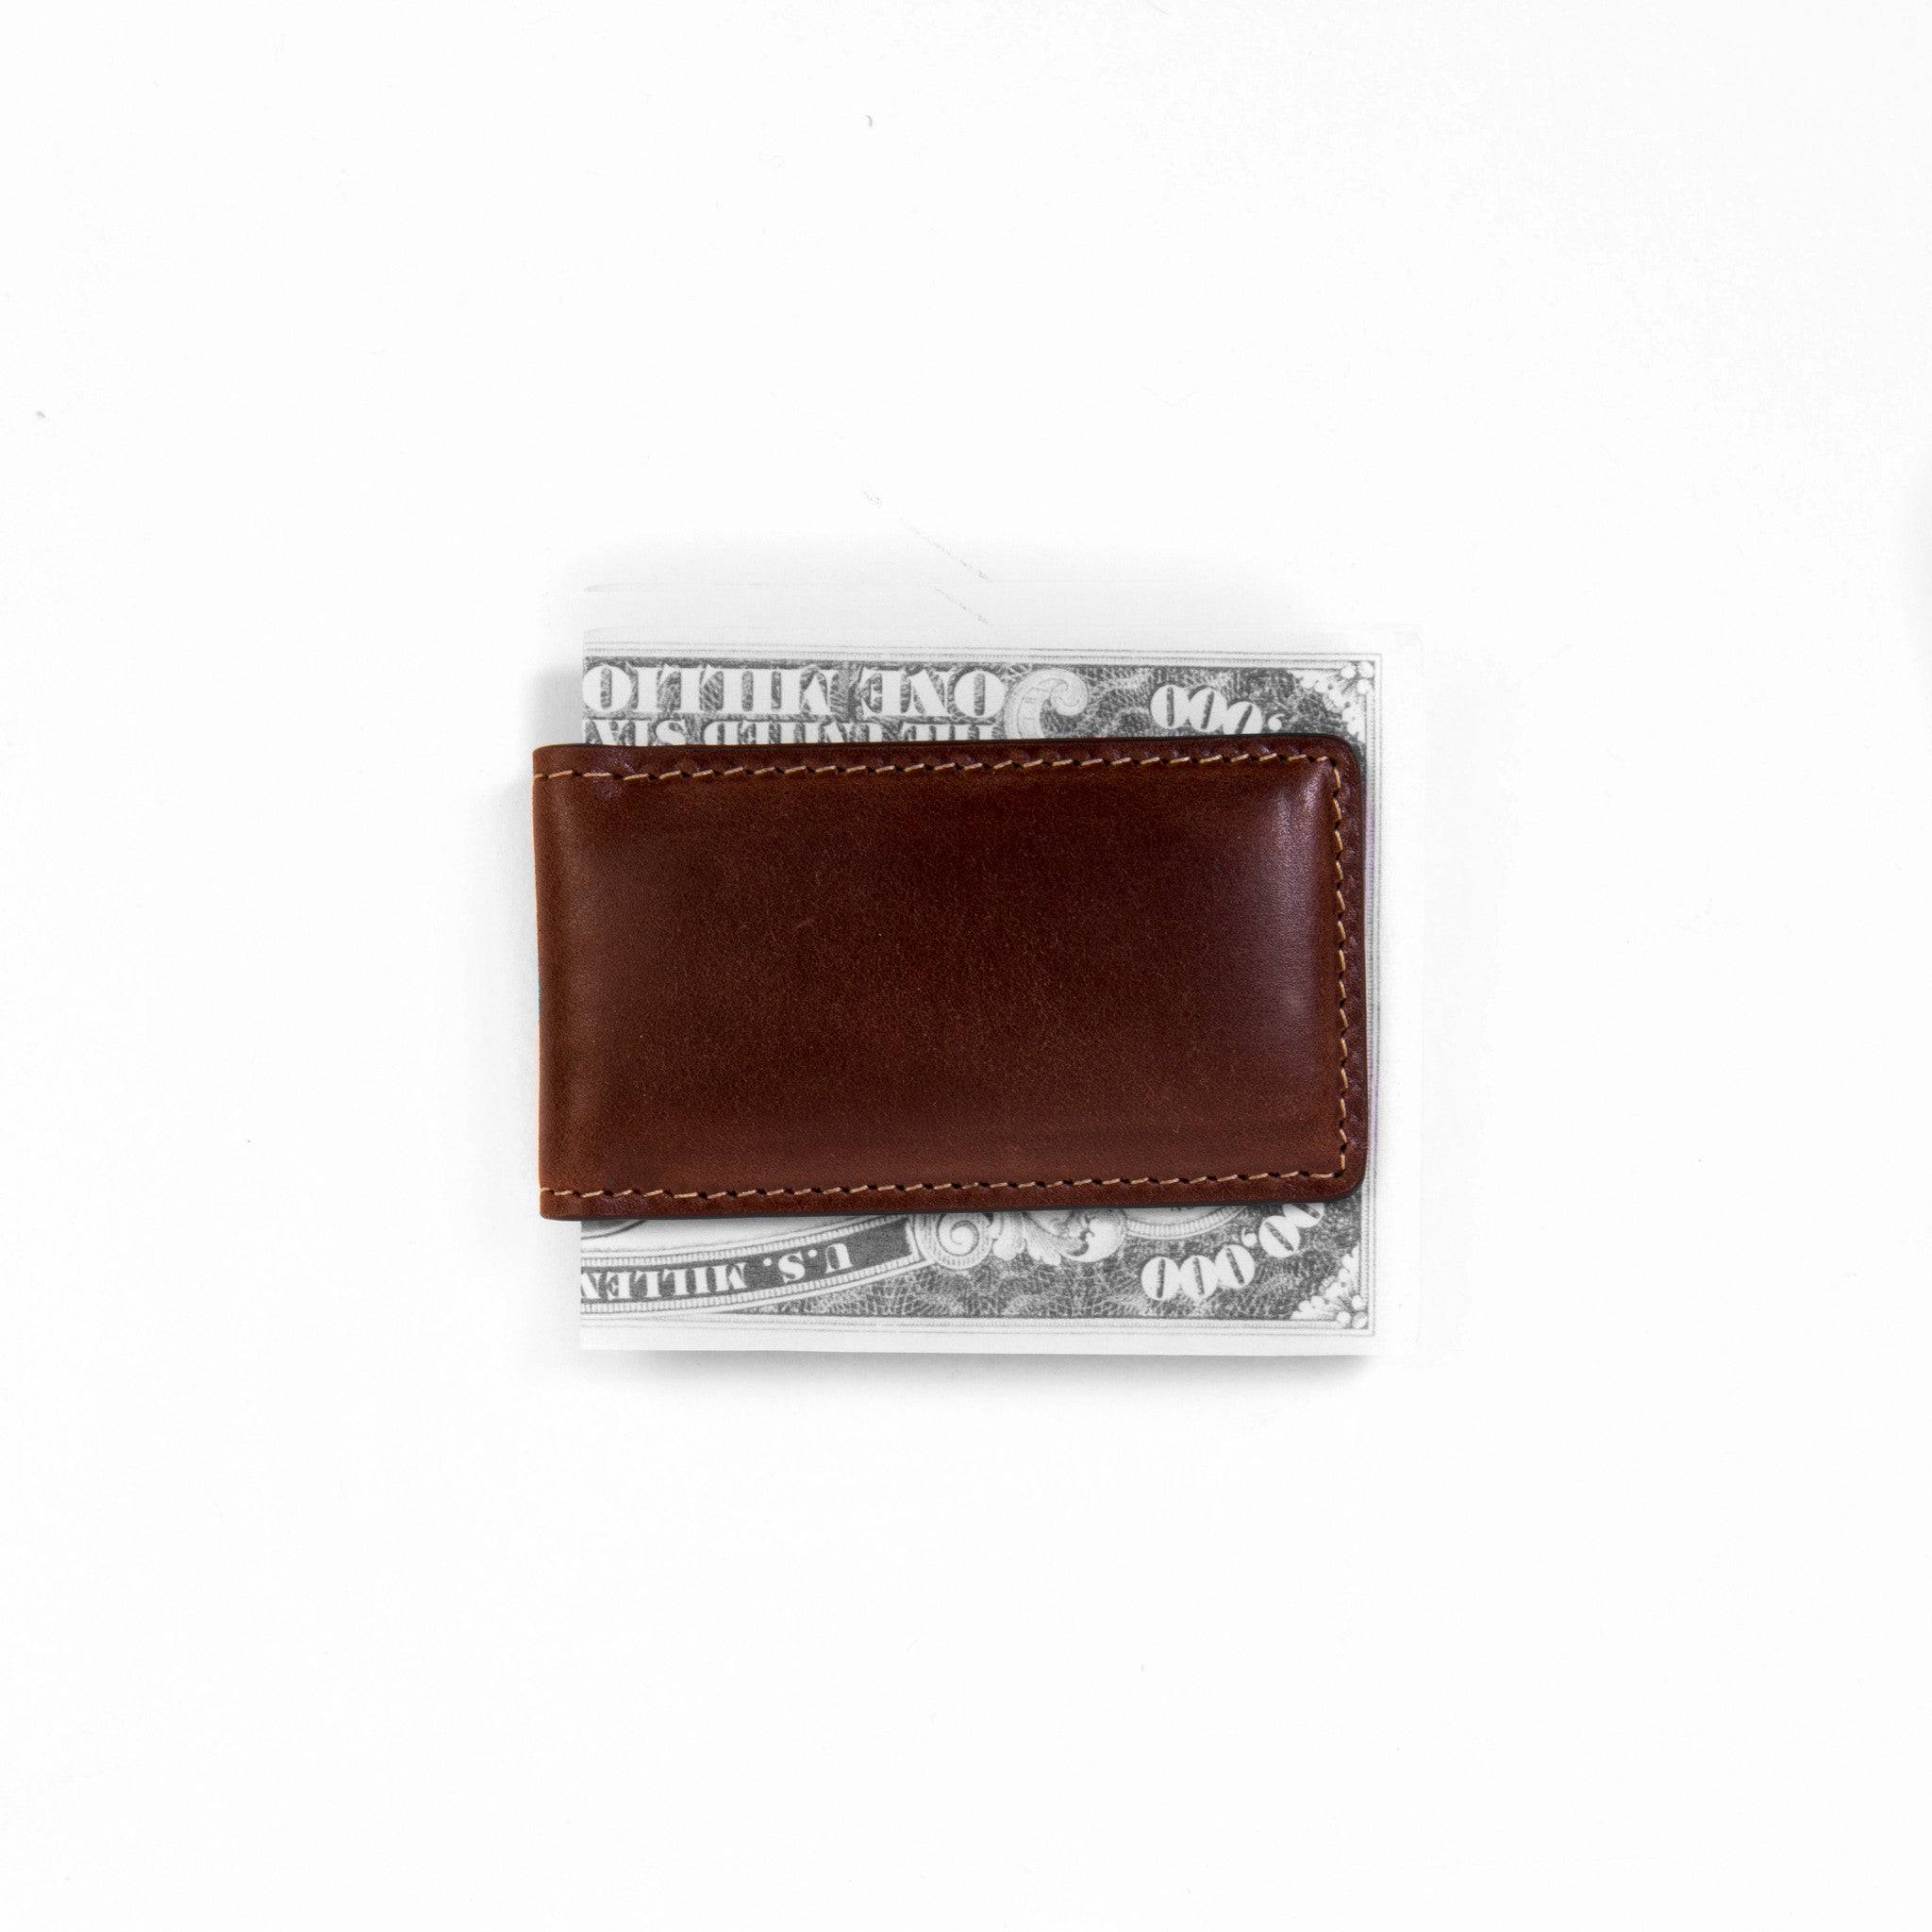 Unisex Luxury Double Zipper Leather Wallet in Ikorodu - Bags, Million Deals